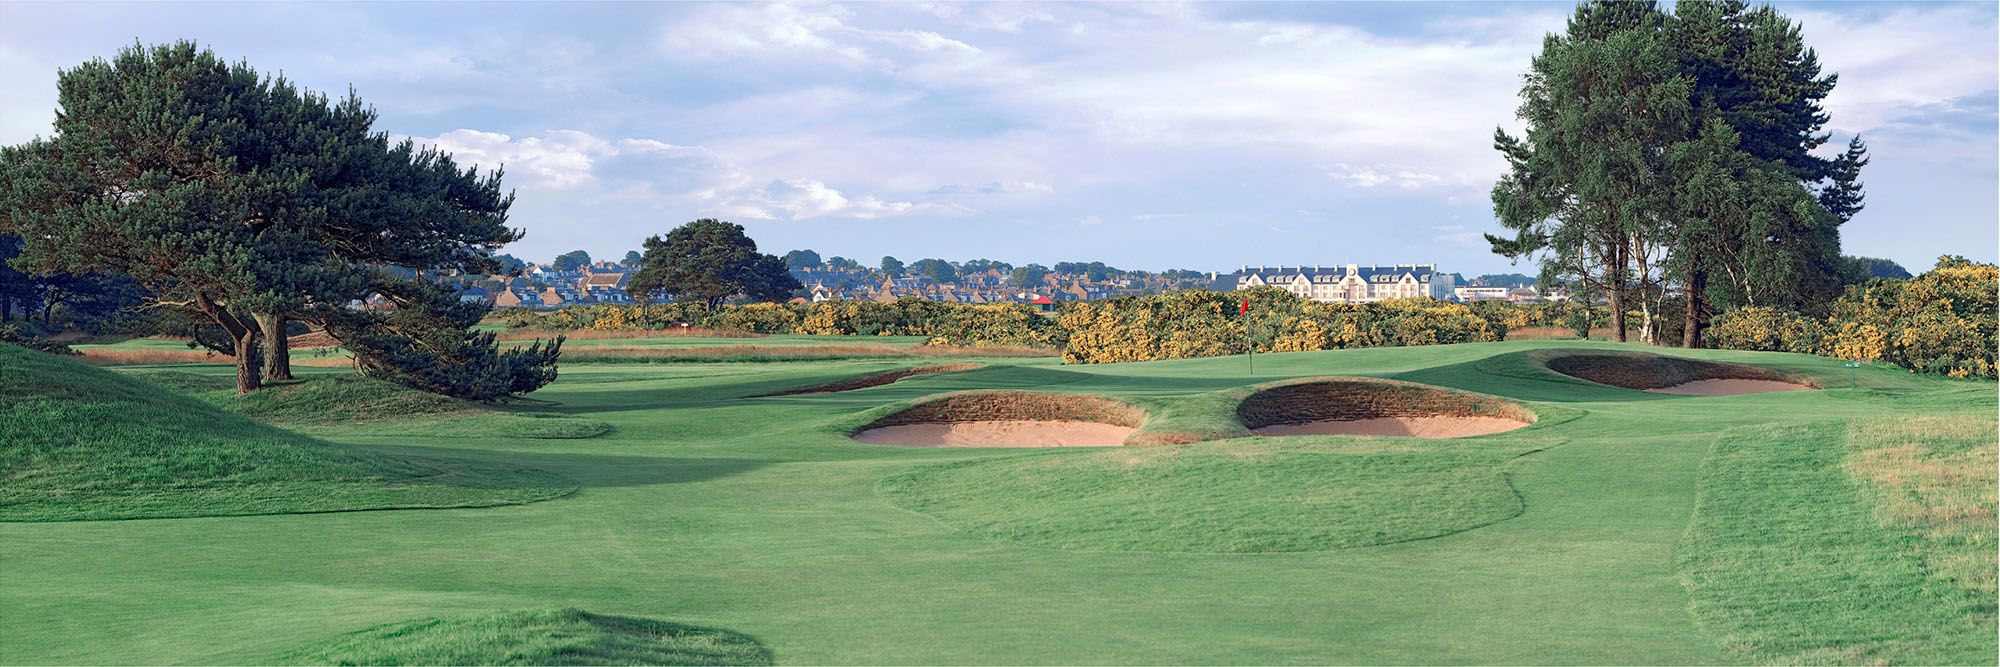 Golf Course Image - Carnoustie No. 13